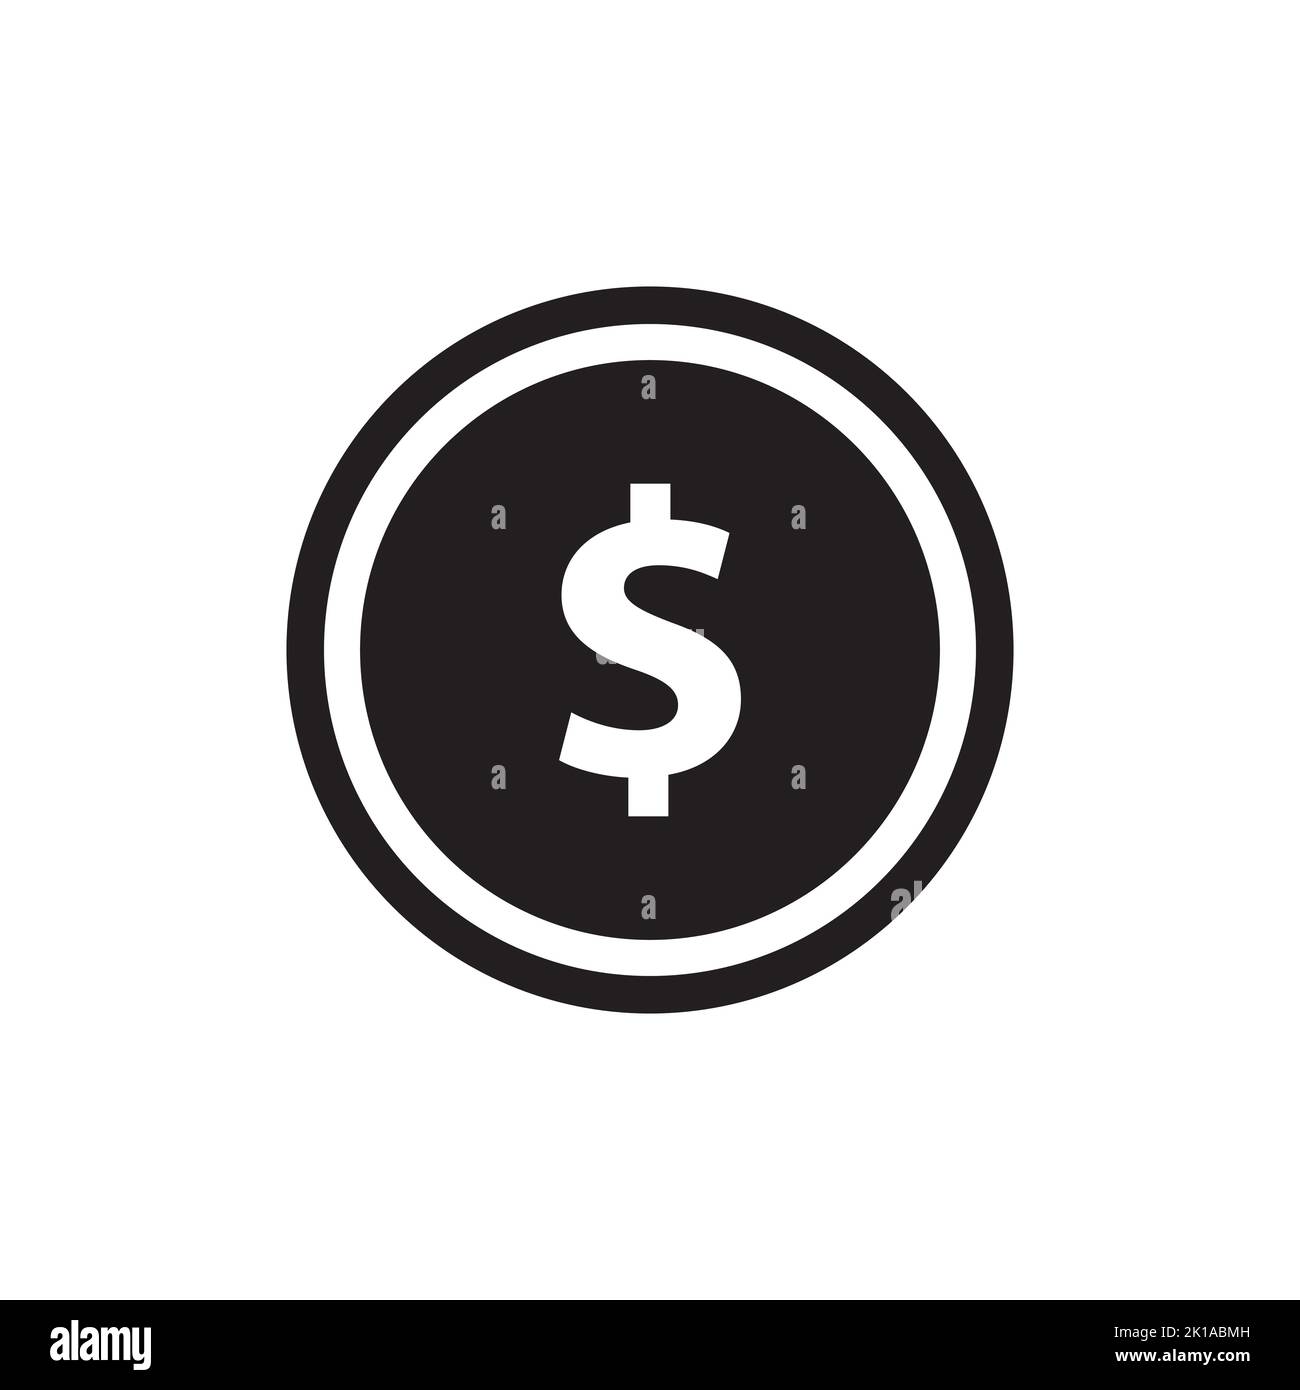 Ein einfaches Design des Dollarzeichens in einem schwarzen Kreis auf weißem Hintergrund Stock Vektor